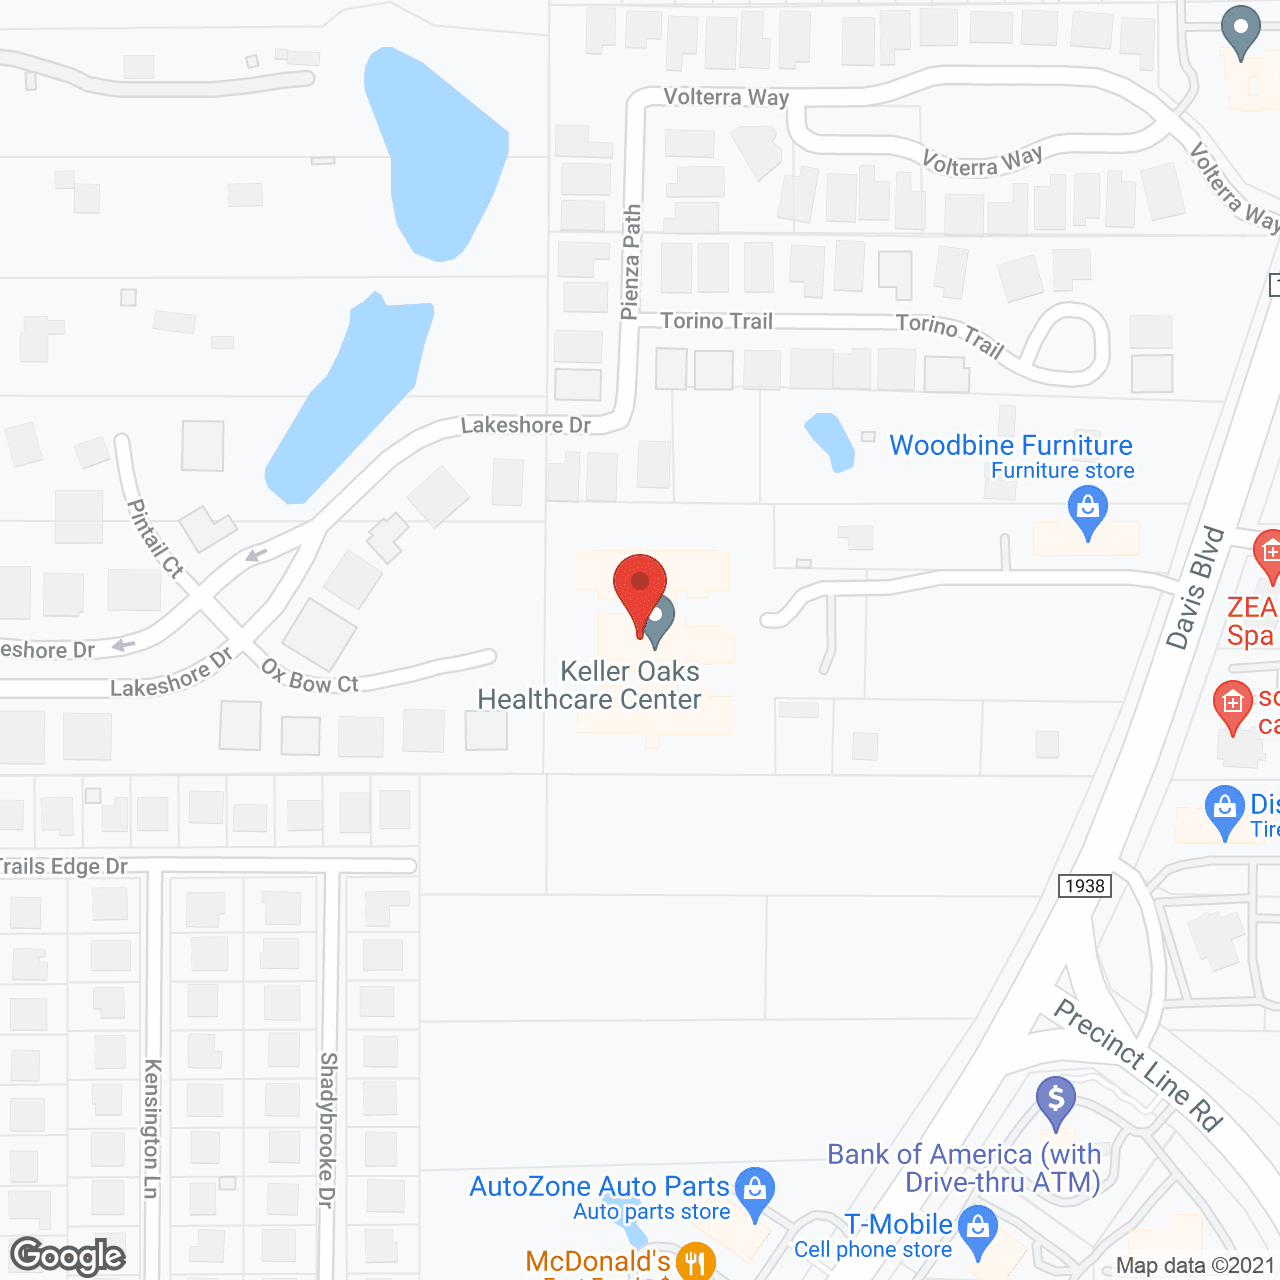 Keller Oaks Healthcare Center in google map